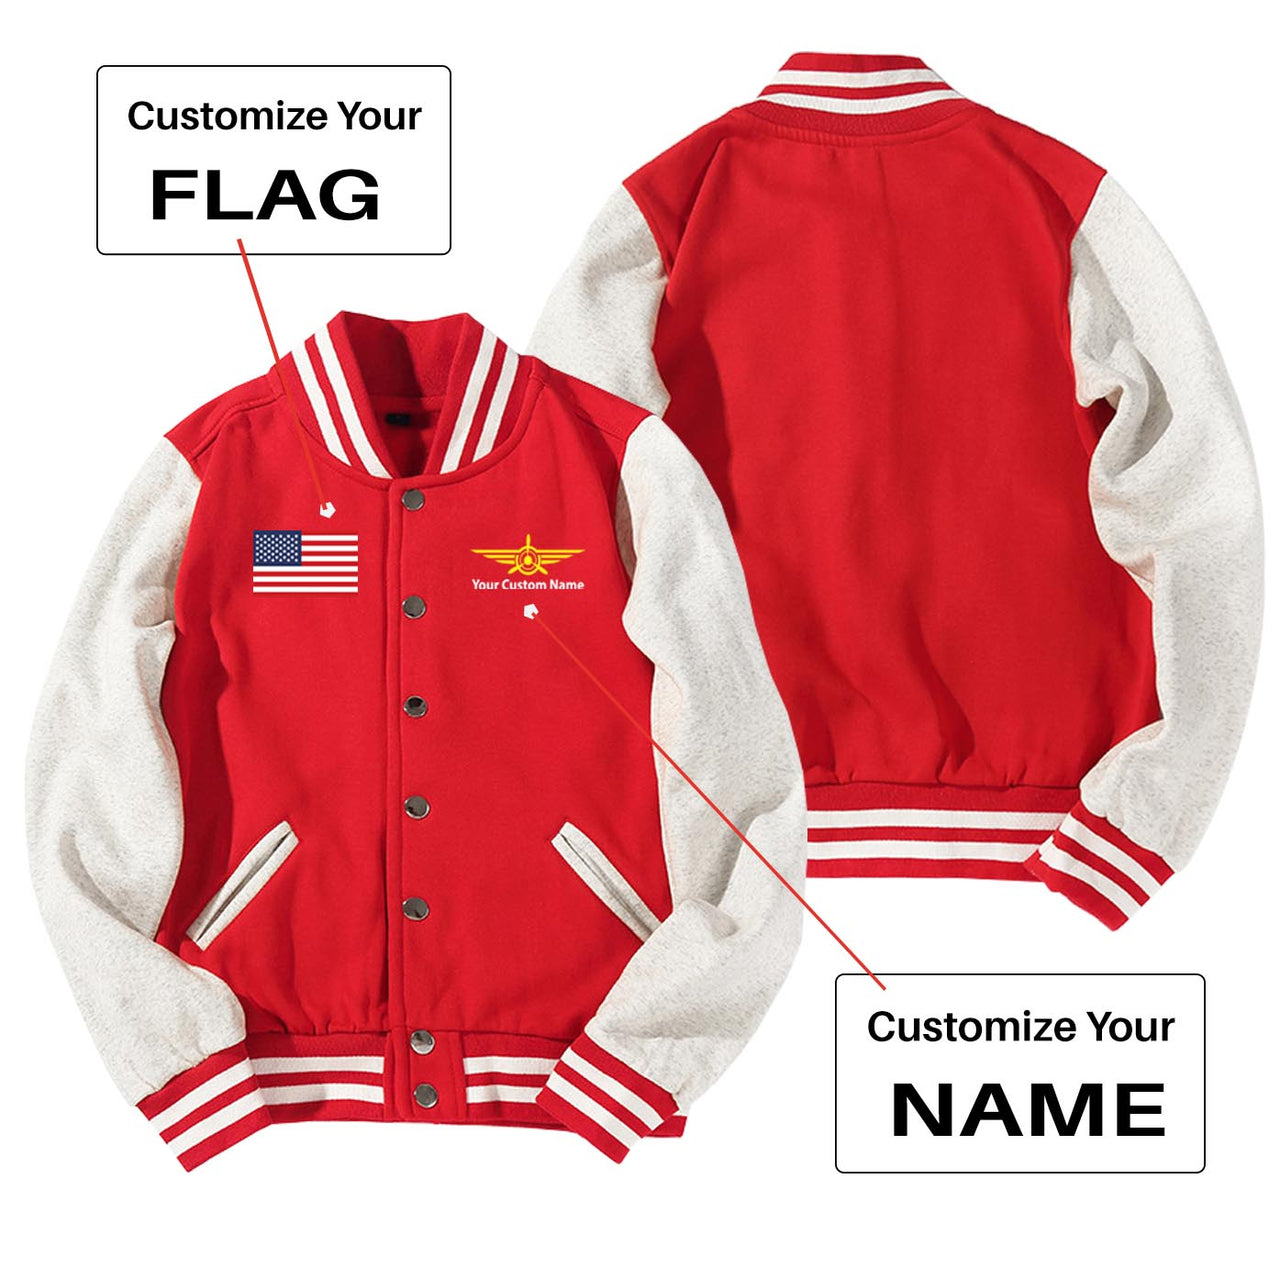 Custom Flag & Name with "Badge 3" Designed Baseball Style Jackets